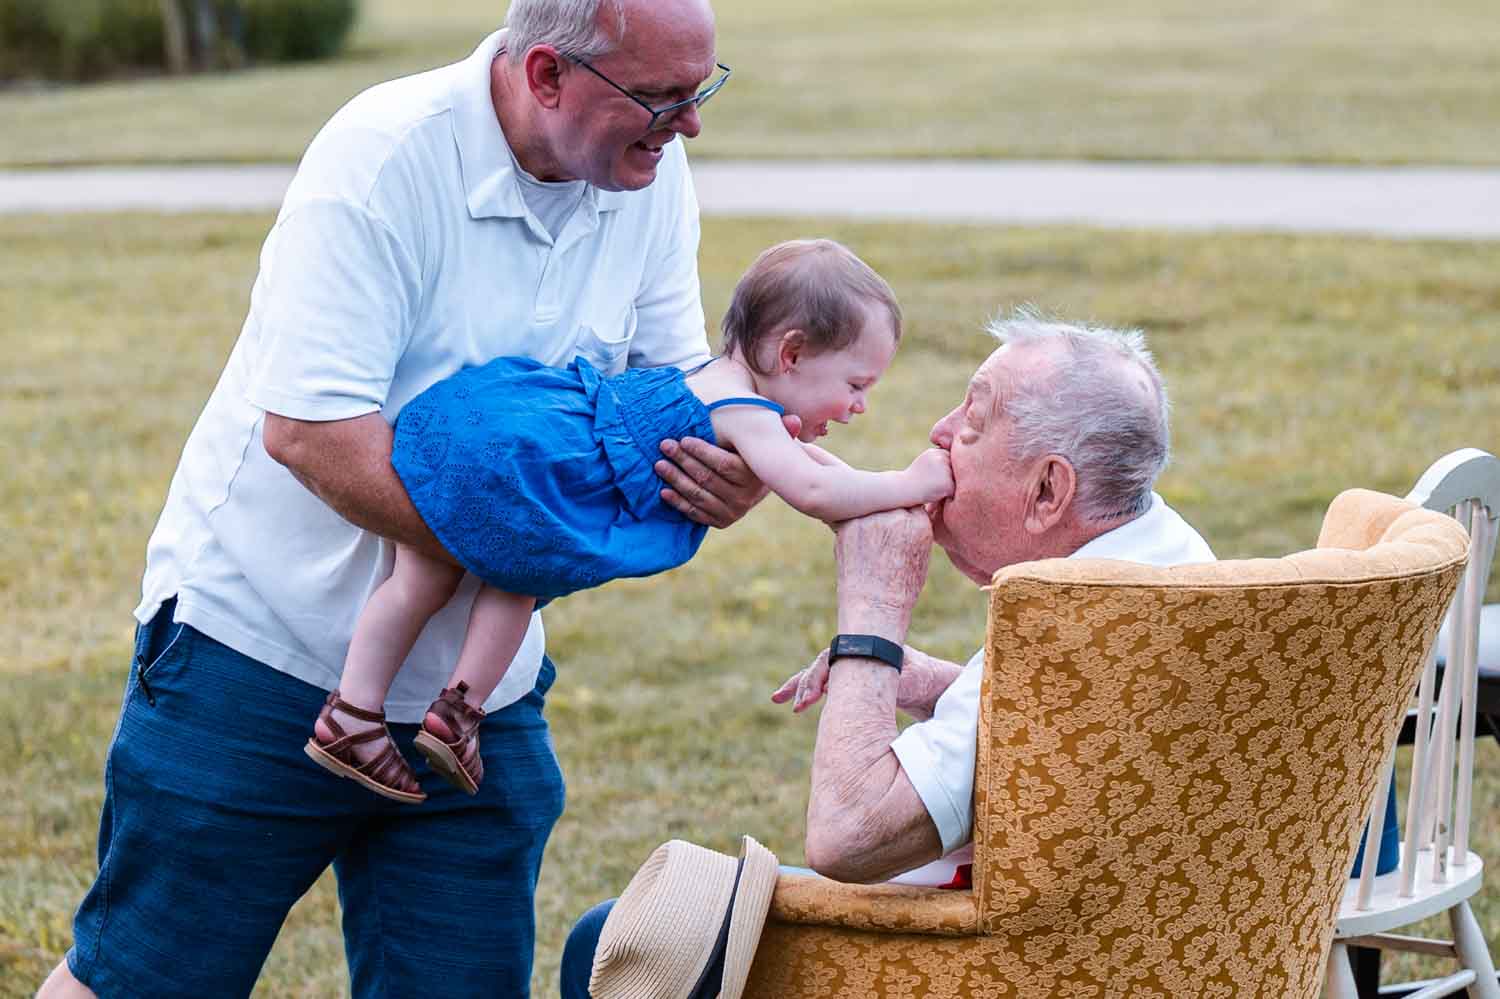 Grandpa kissing his great granddaughter's hand